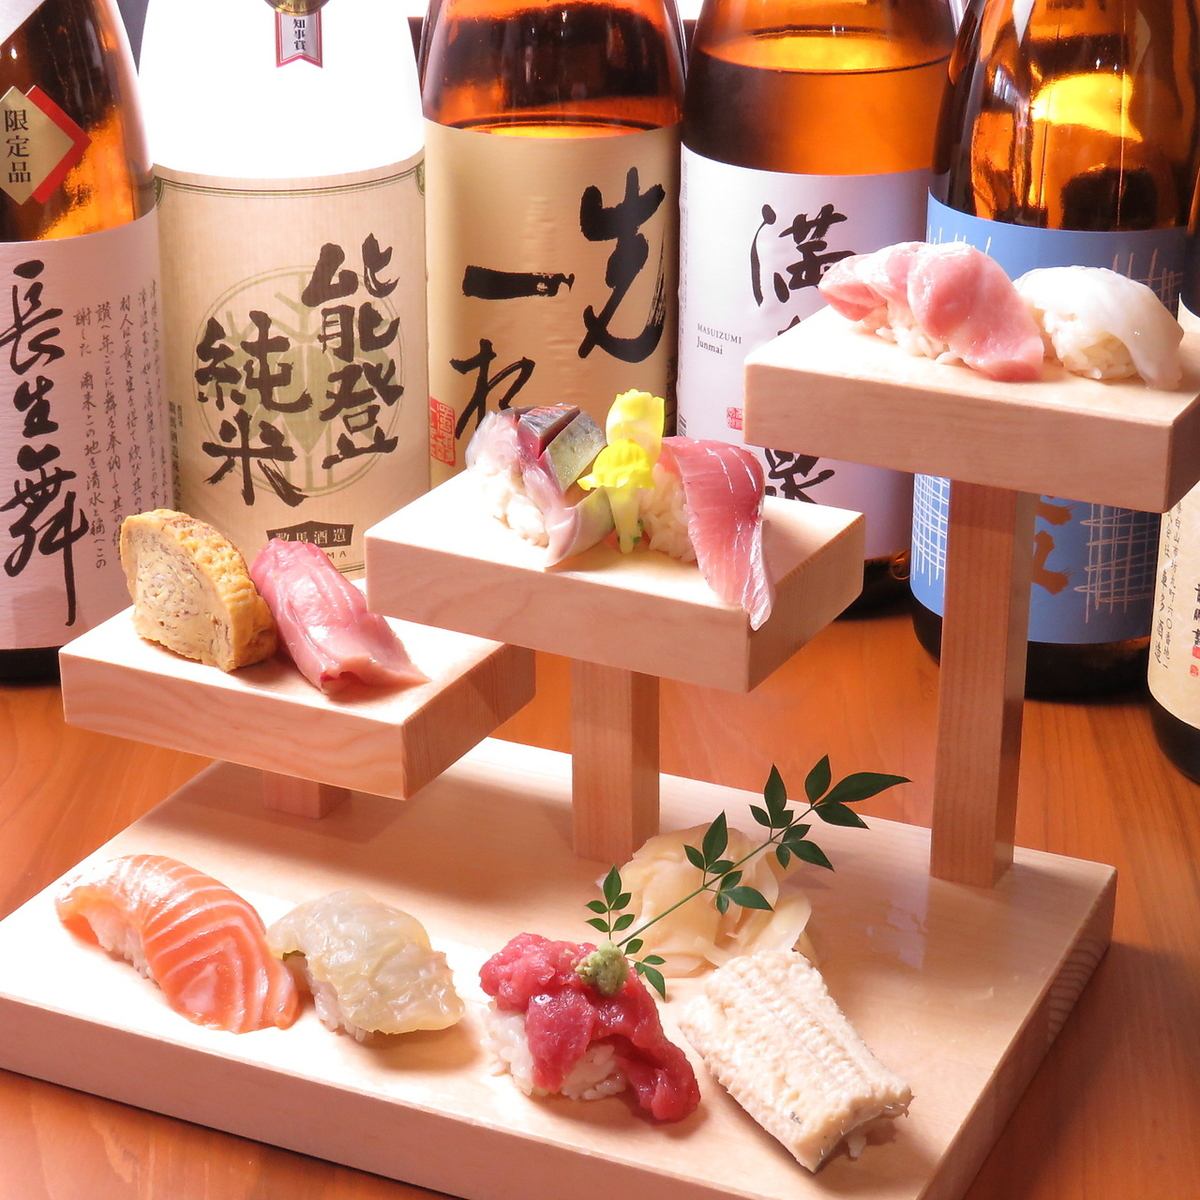 著名的“樓梯壽司”。顏色鮮豔！注意魚的新鮮度和口感的紮實！